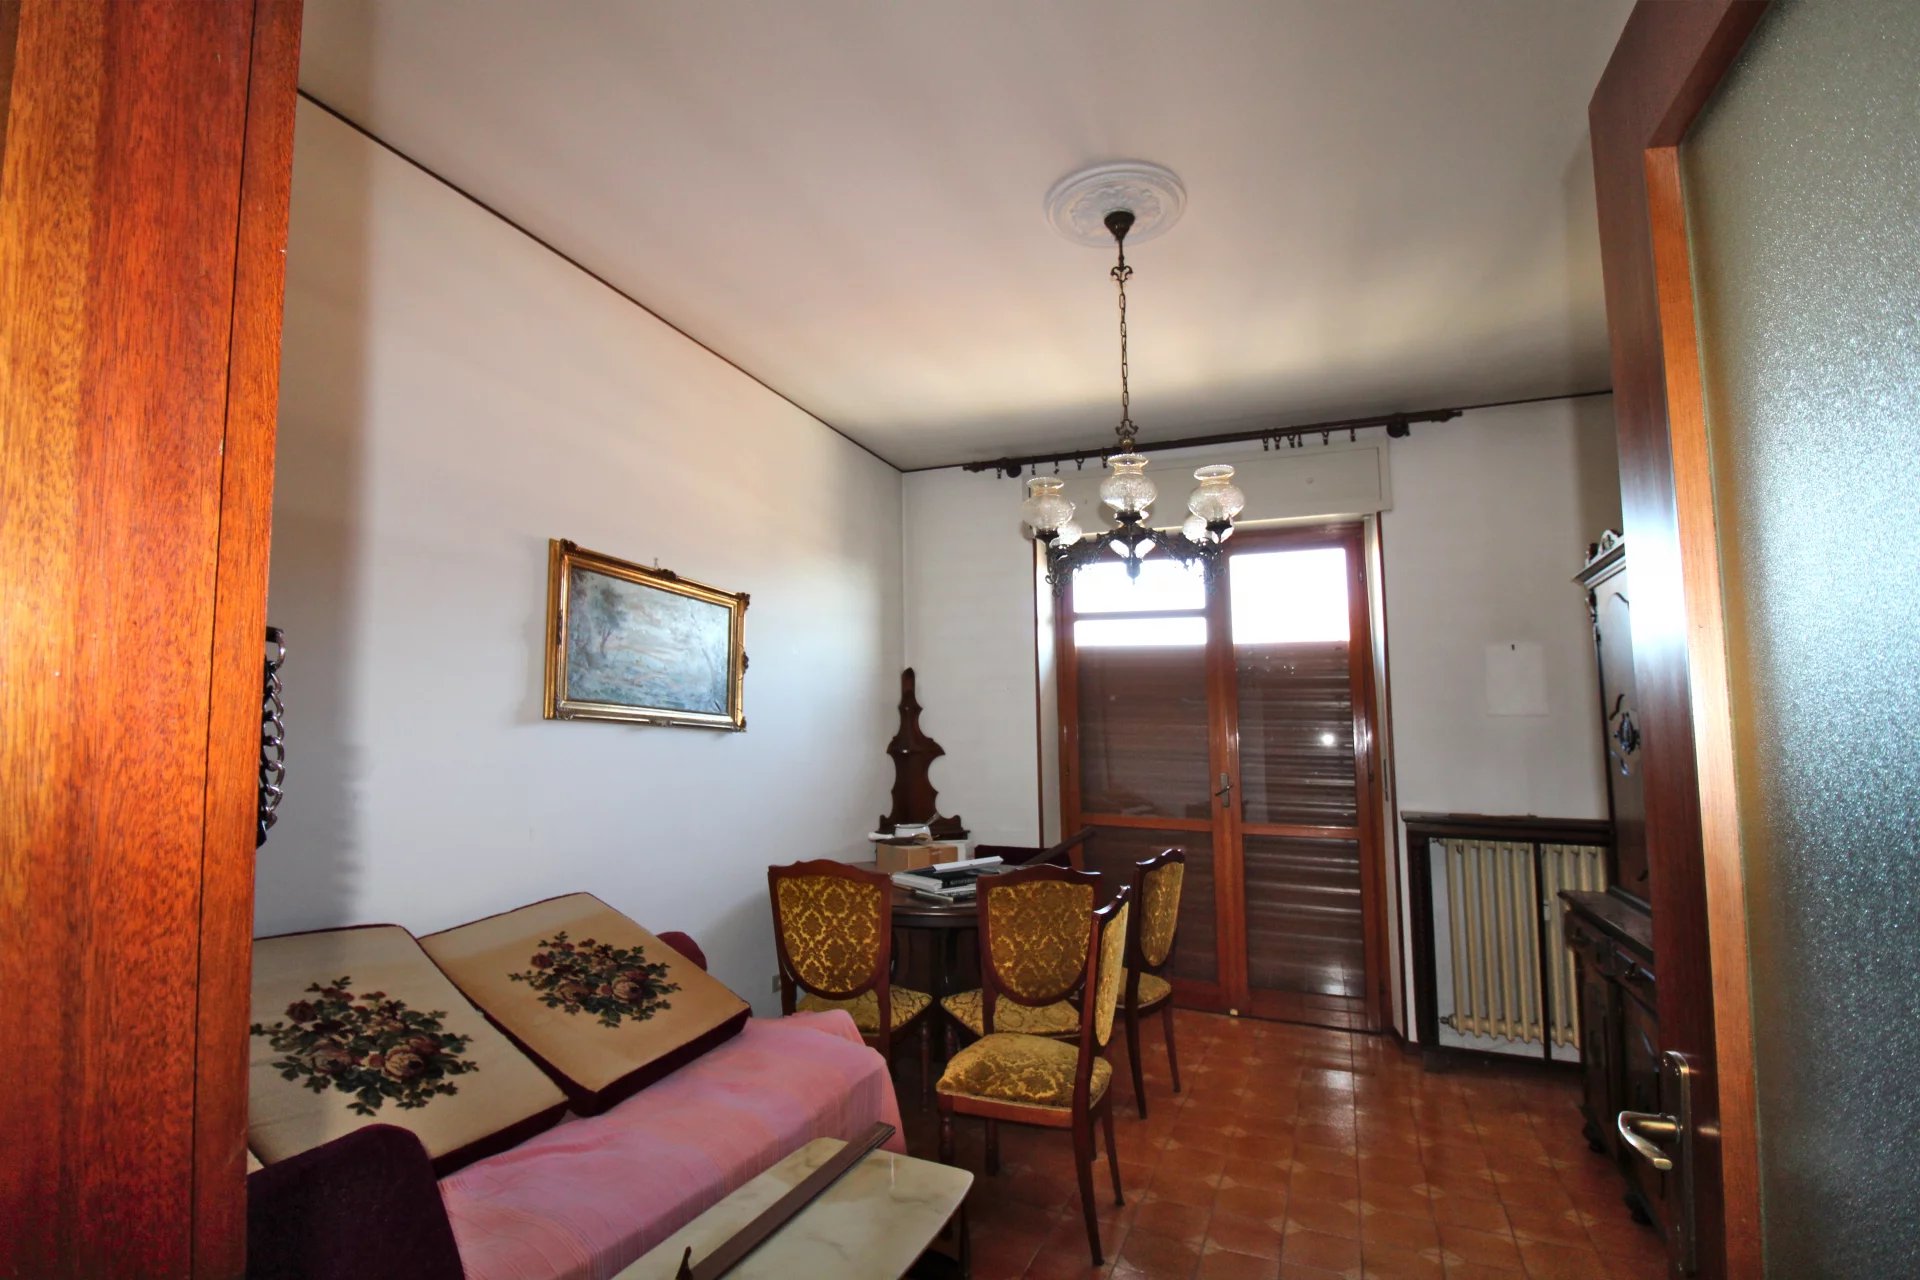 Affascinante appartamento nel cuore di San Damiano d'Asti con cantina e box auto